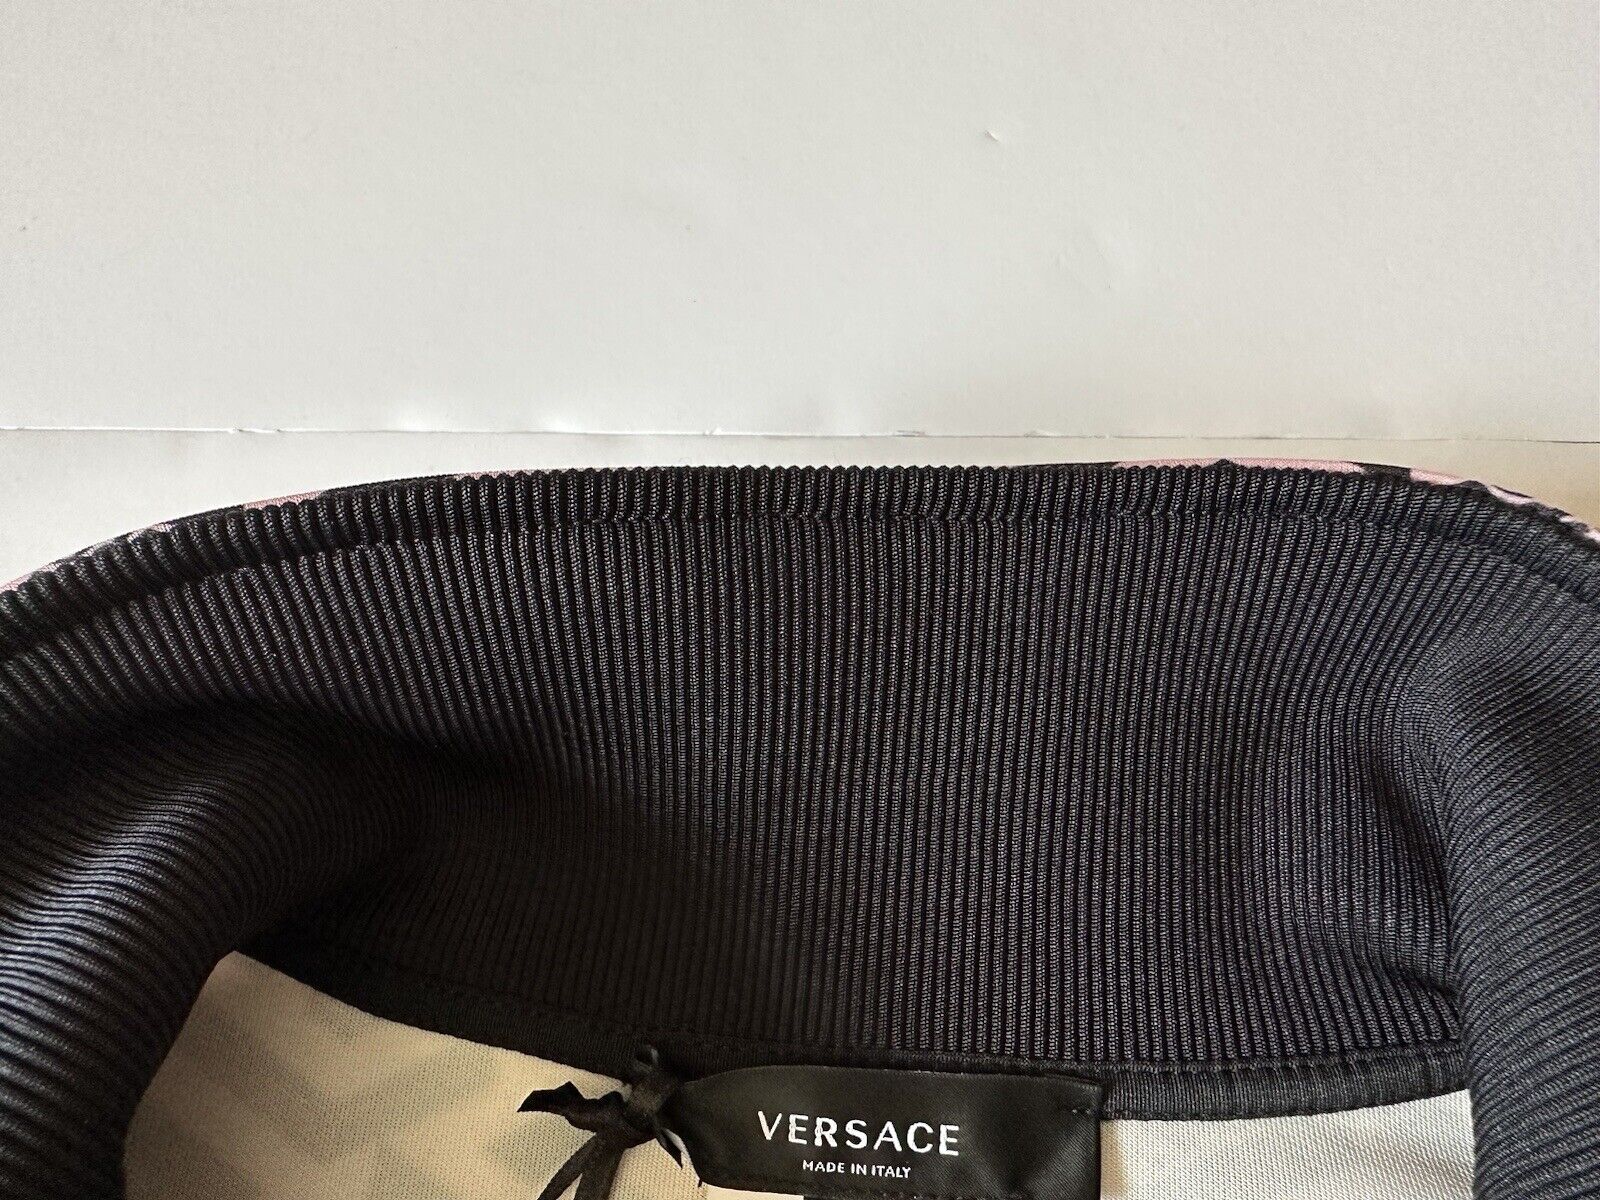 NWT $925 Женская куртка-джоггер с принтом Versace Greca, черная, размер 4 1002080 Италия 